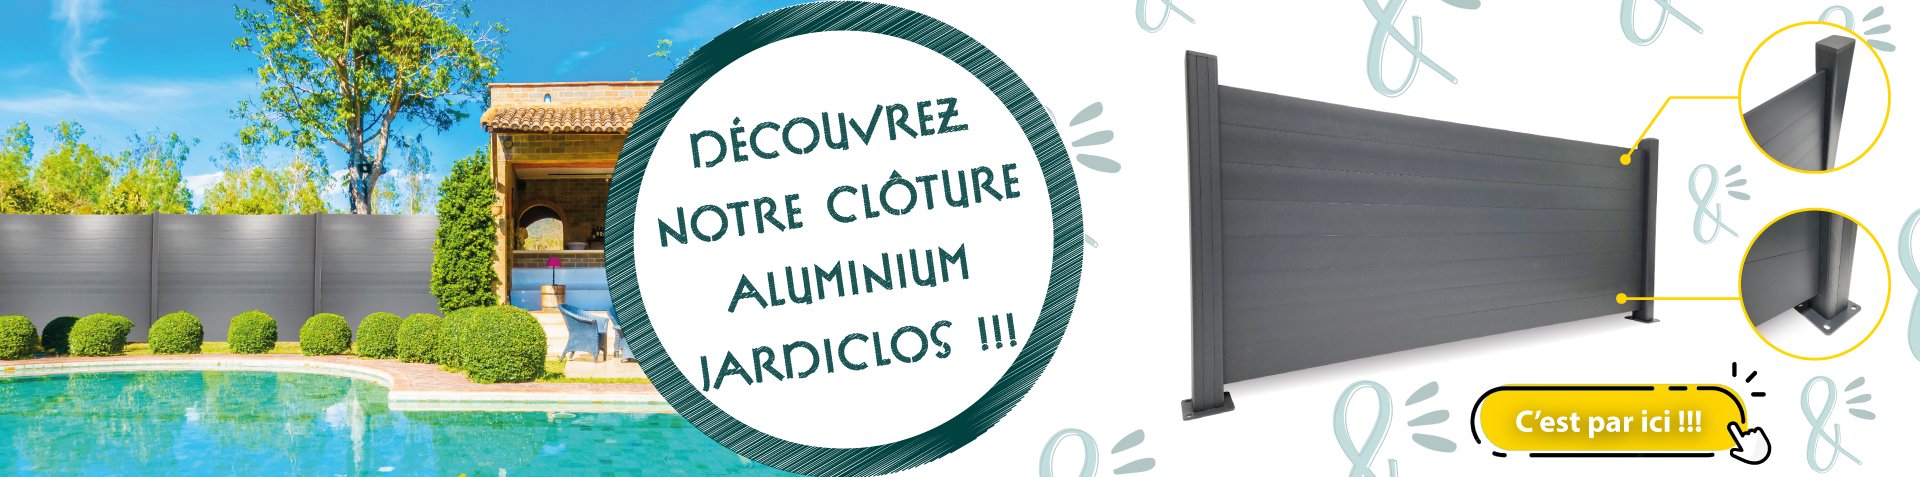 Nouveautés aluminium - Clôture Jardiclos